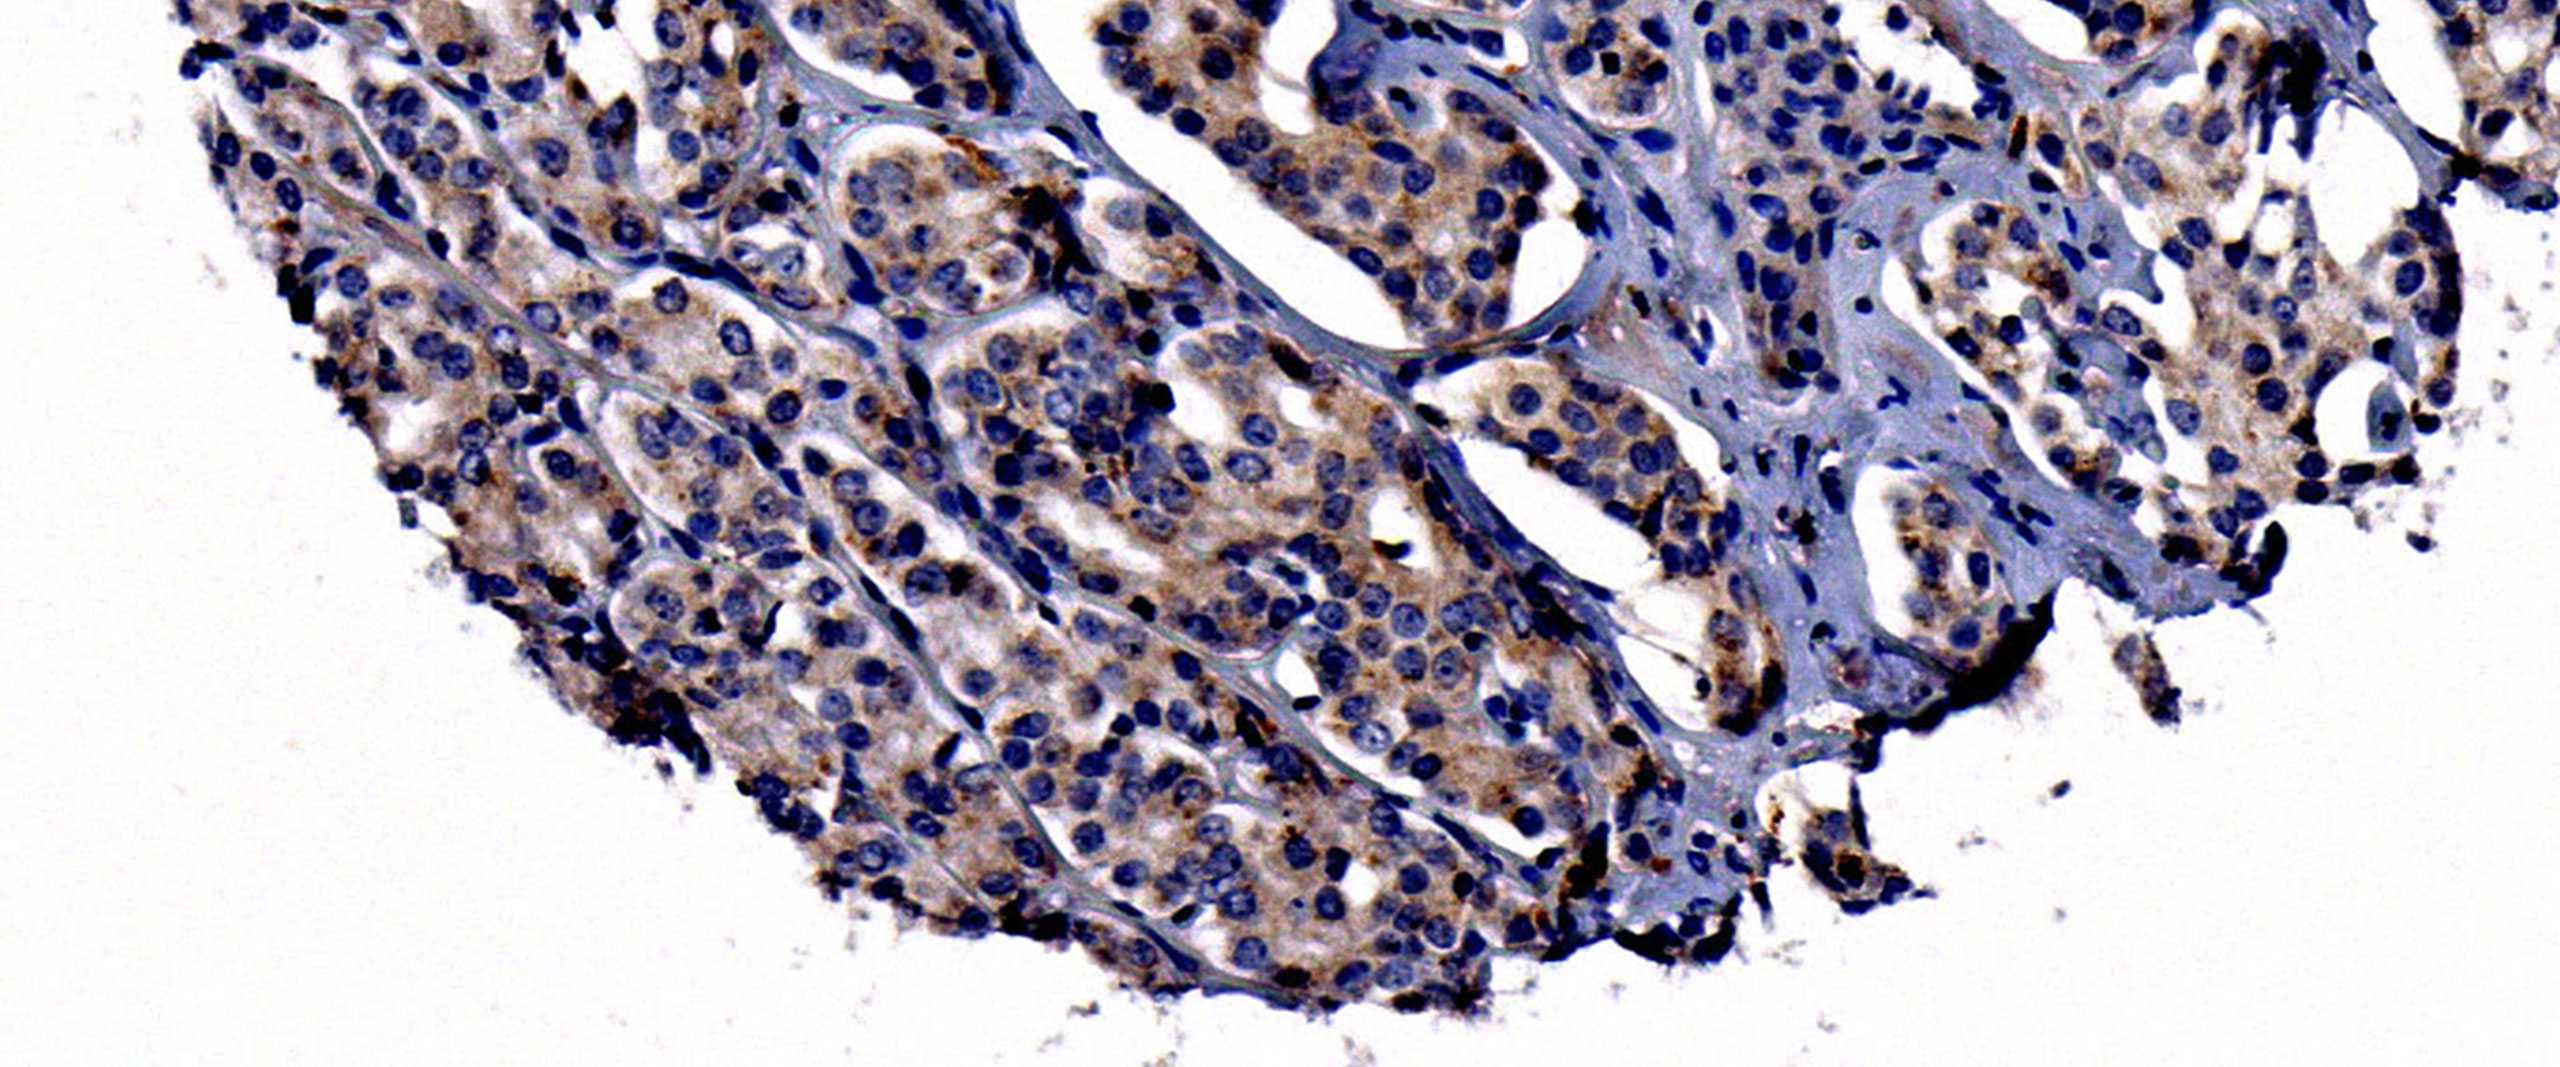 Prostatakarzinomzellen mit Nachweis des Neuropilin-2-Proteins in braun